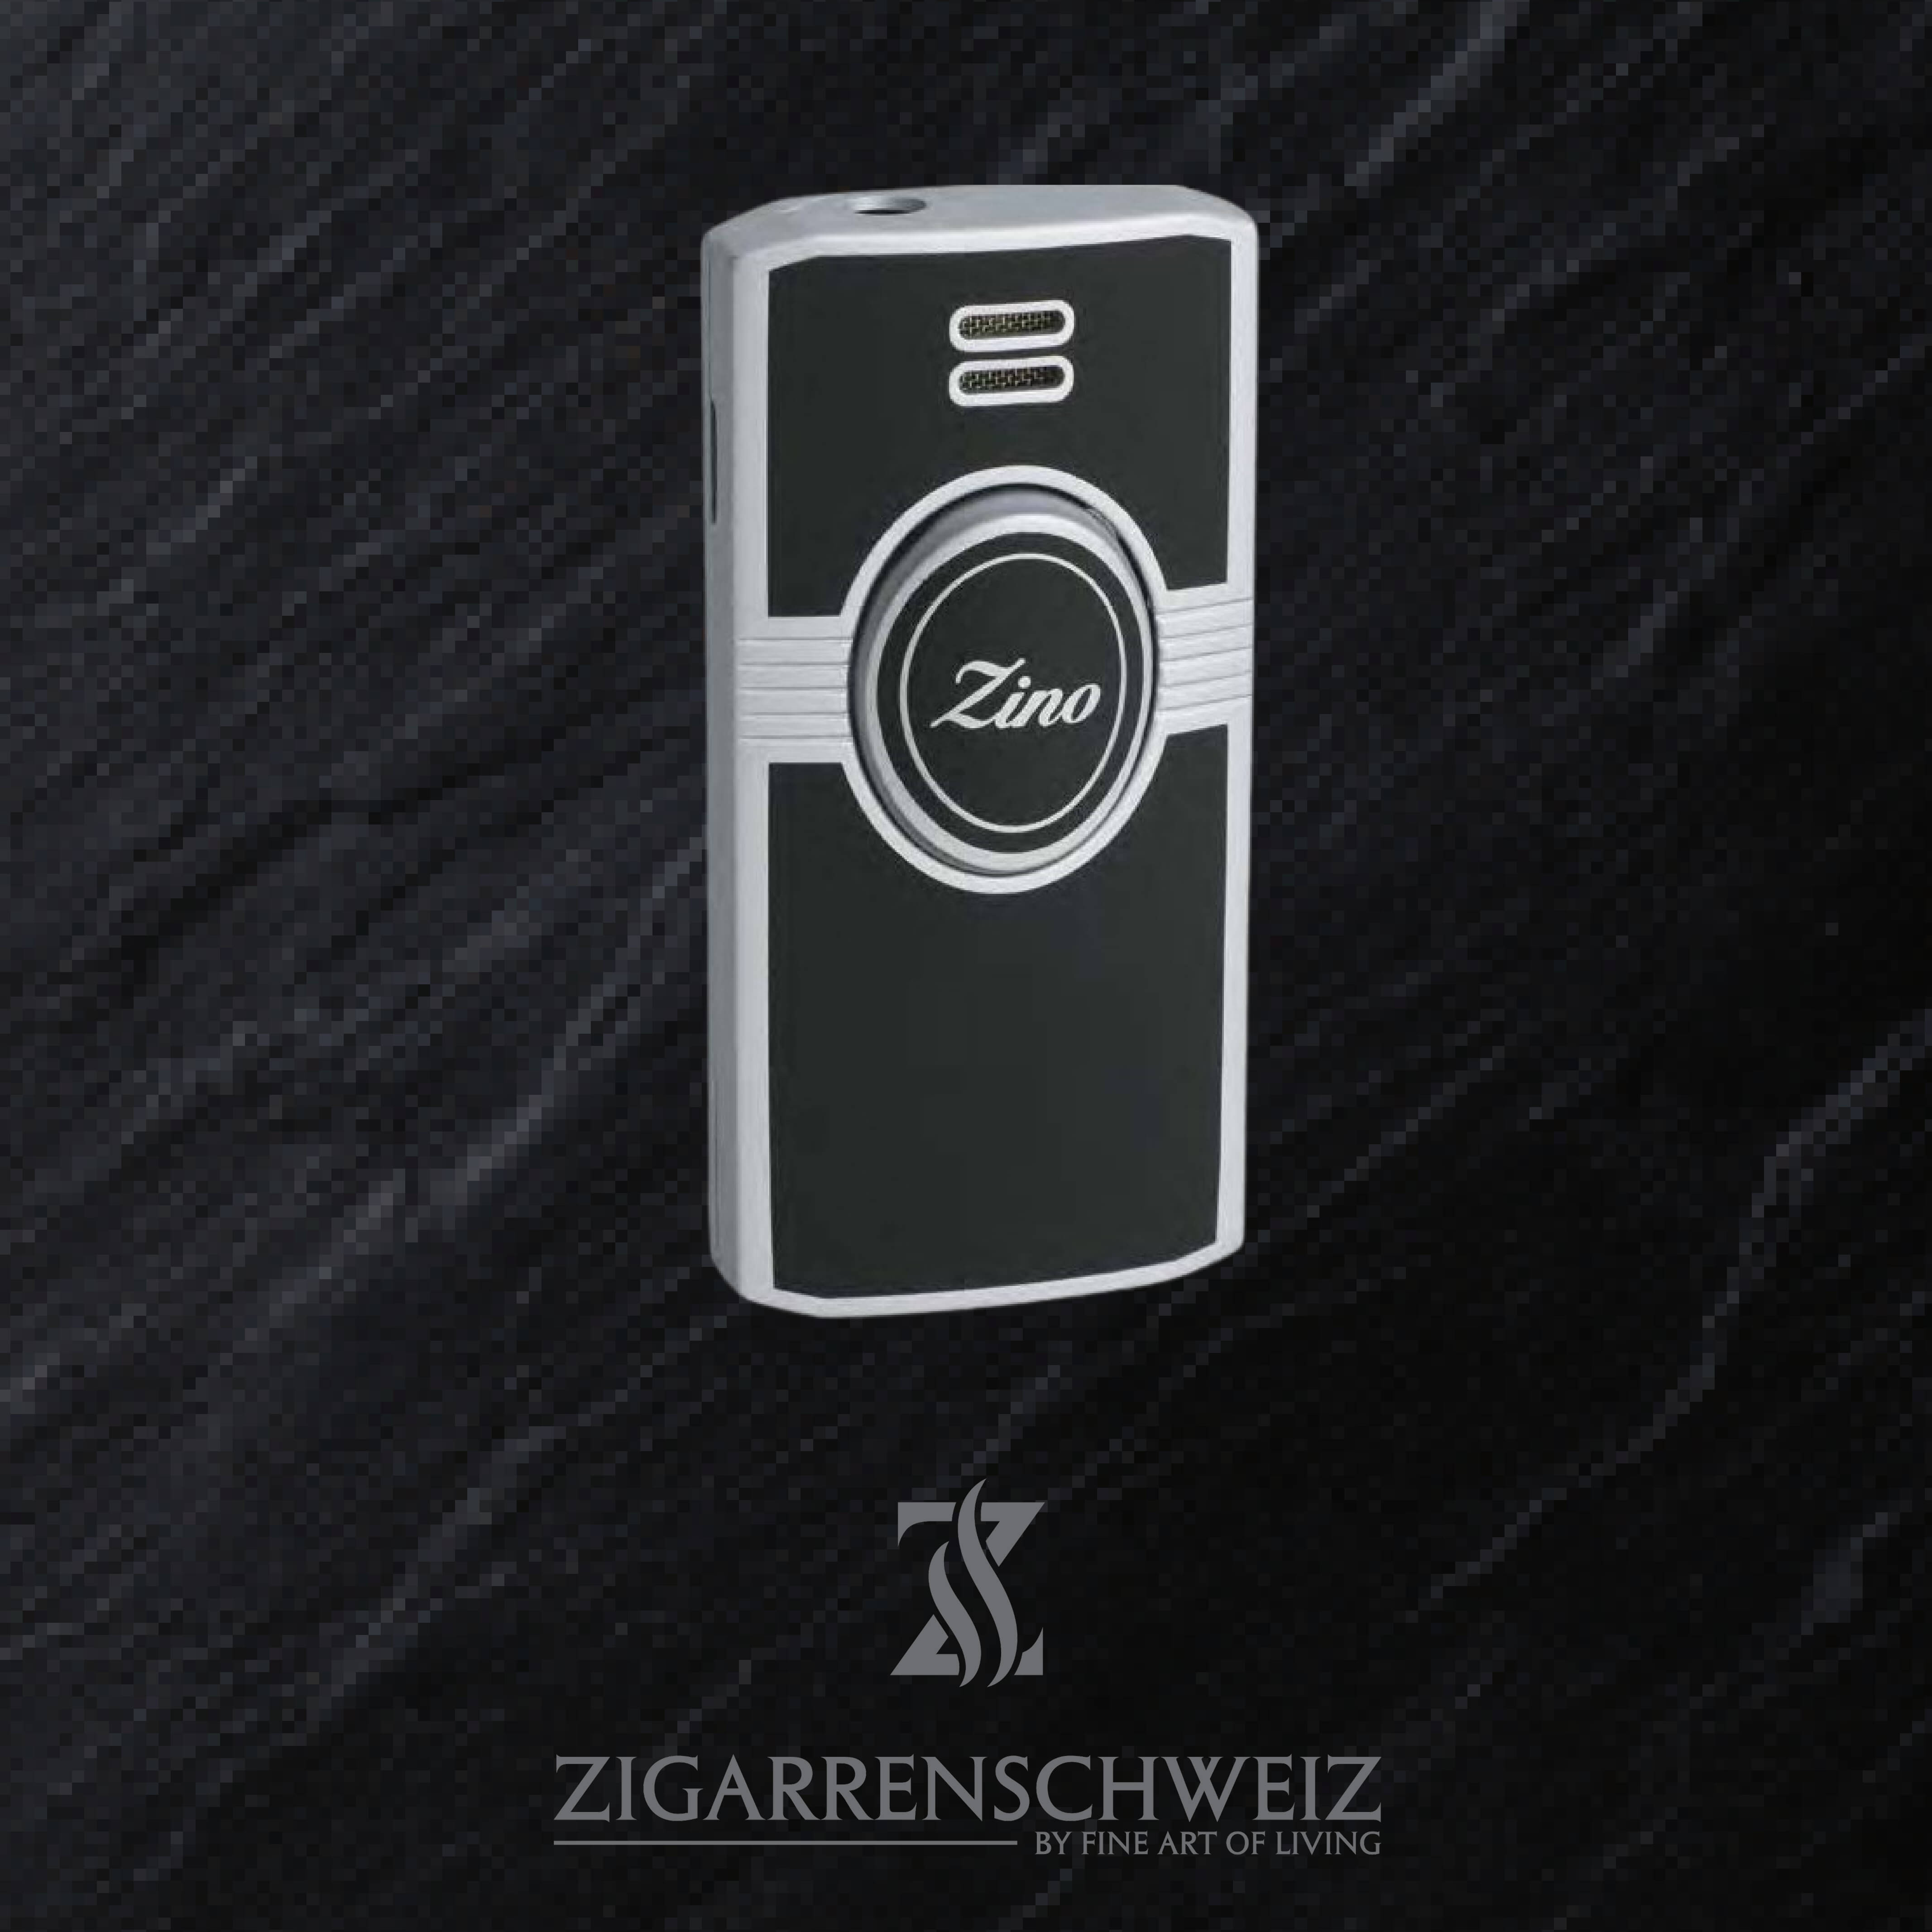 Zino Jet Flame Feuerzeug für Zigarren mit Lederetui, Farbe: Schwarz